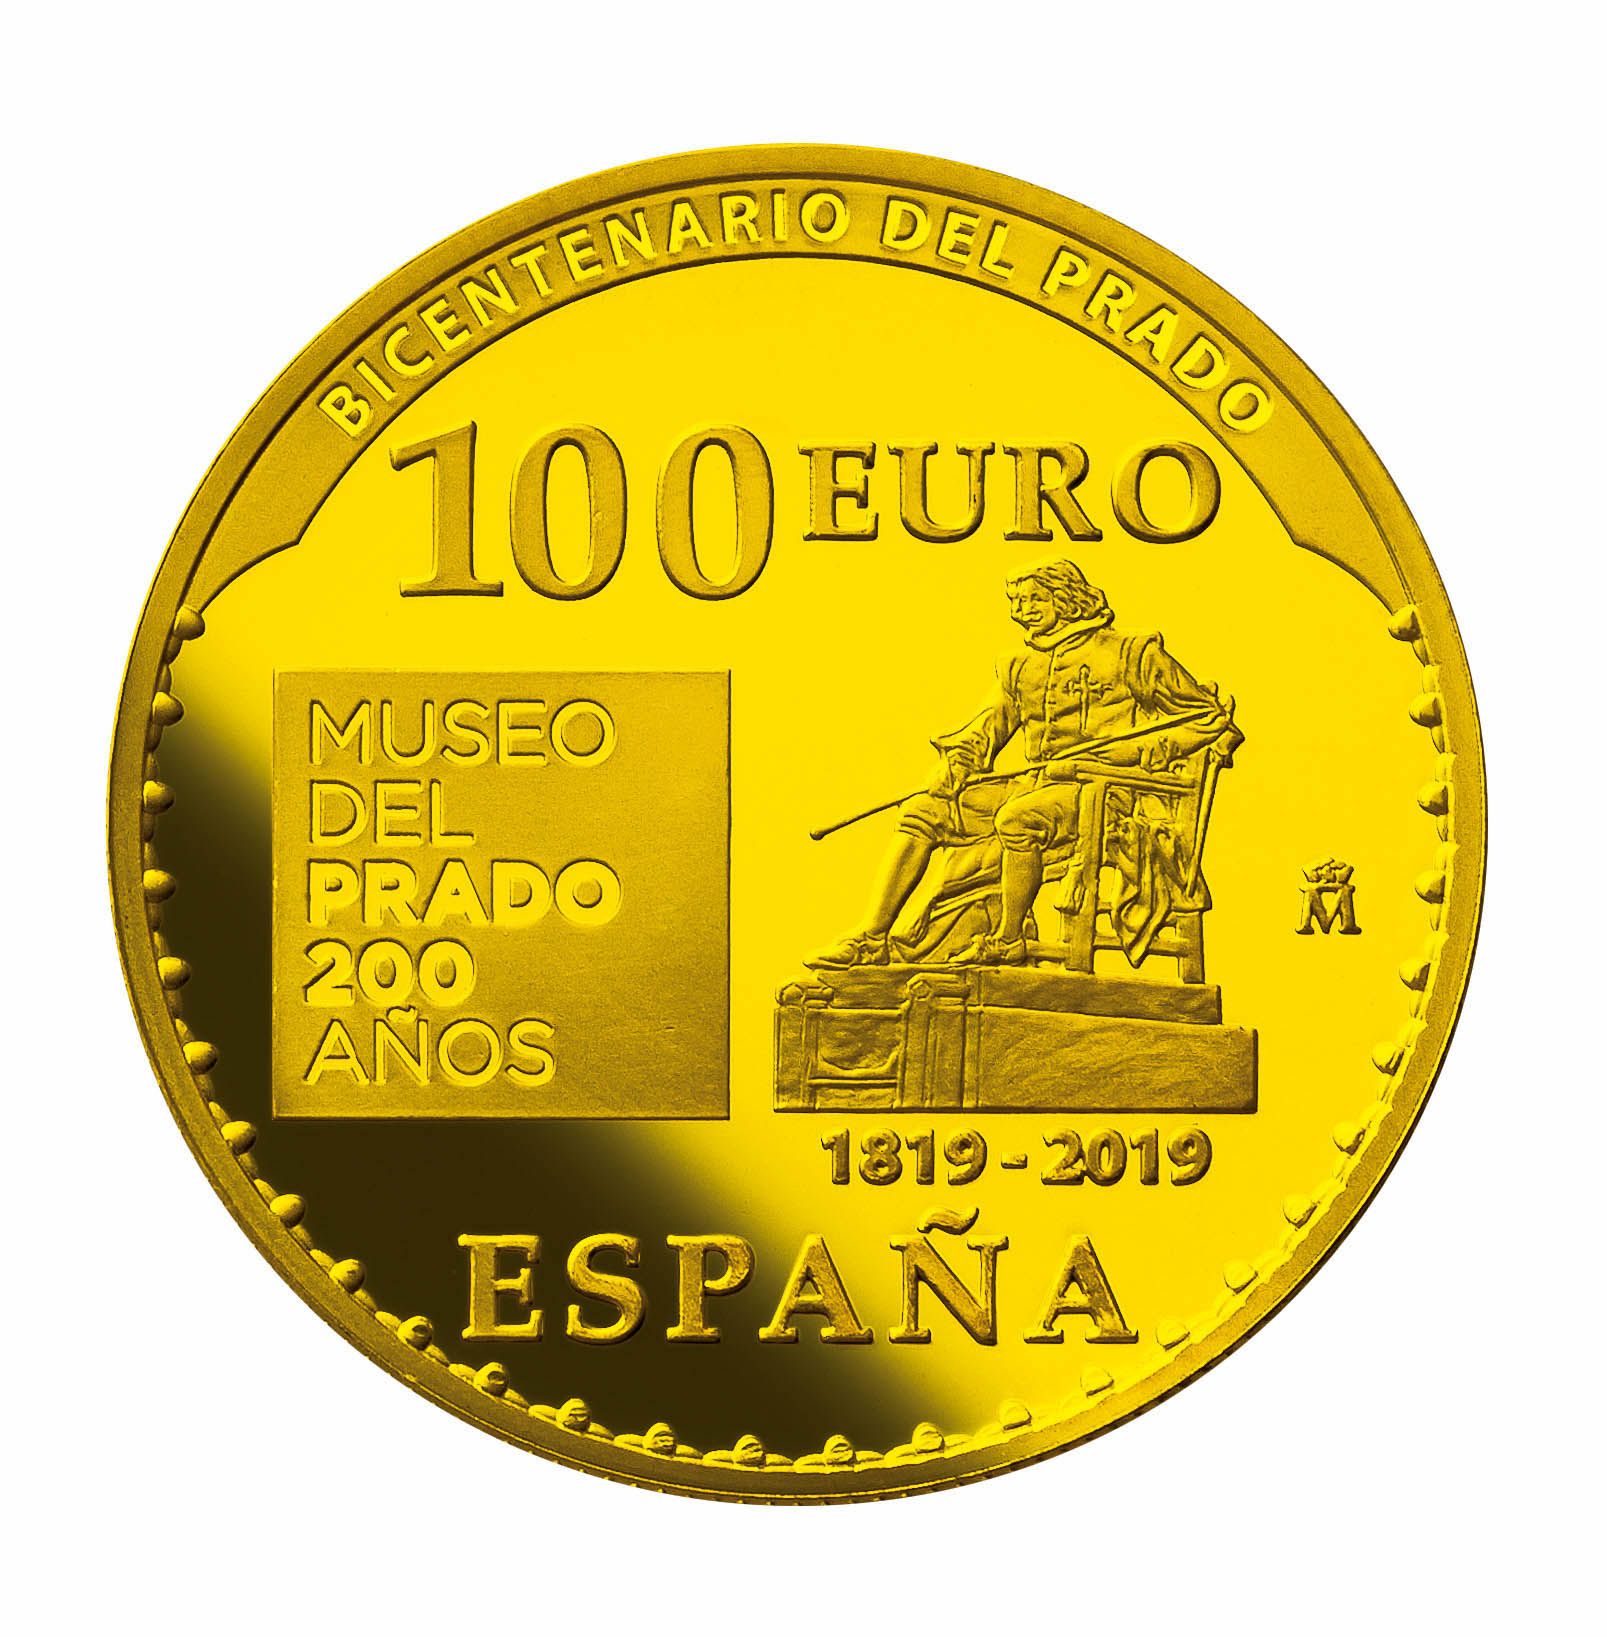 【プラド美術館200周年】数量限定の公式記念コイン | スペイン情報